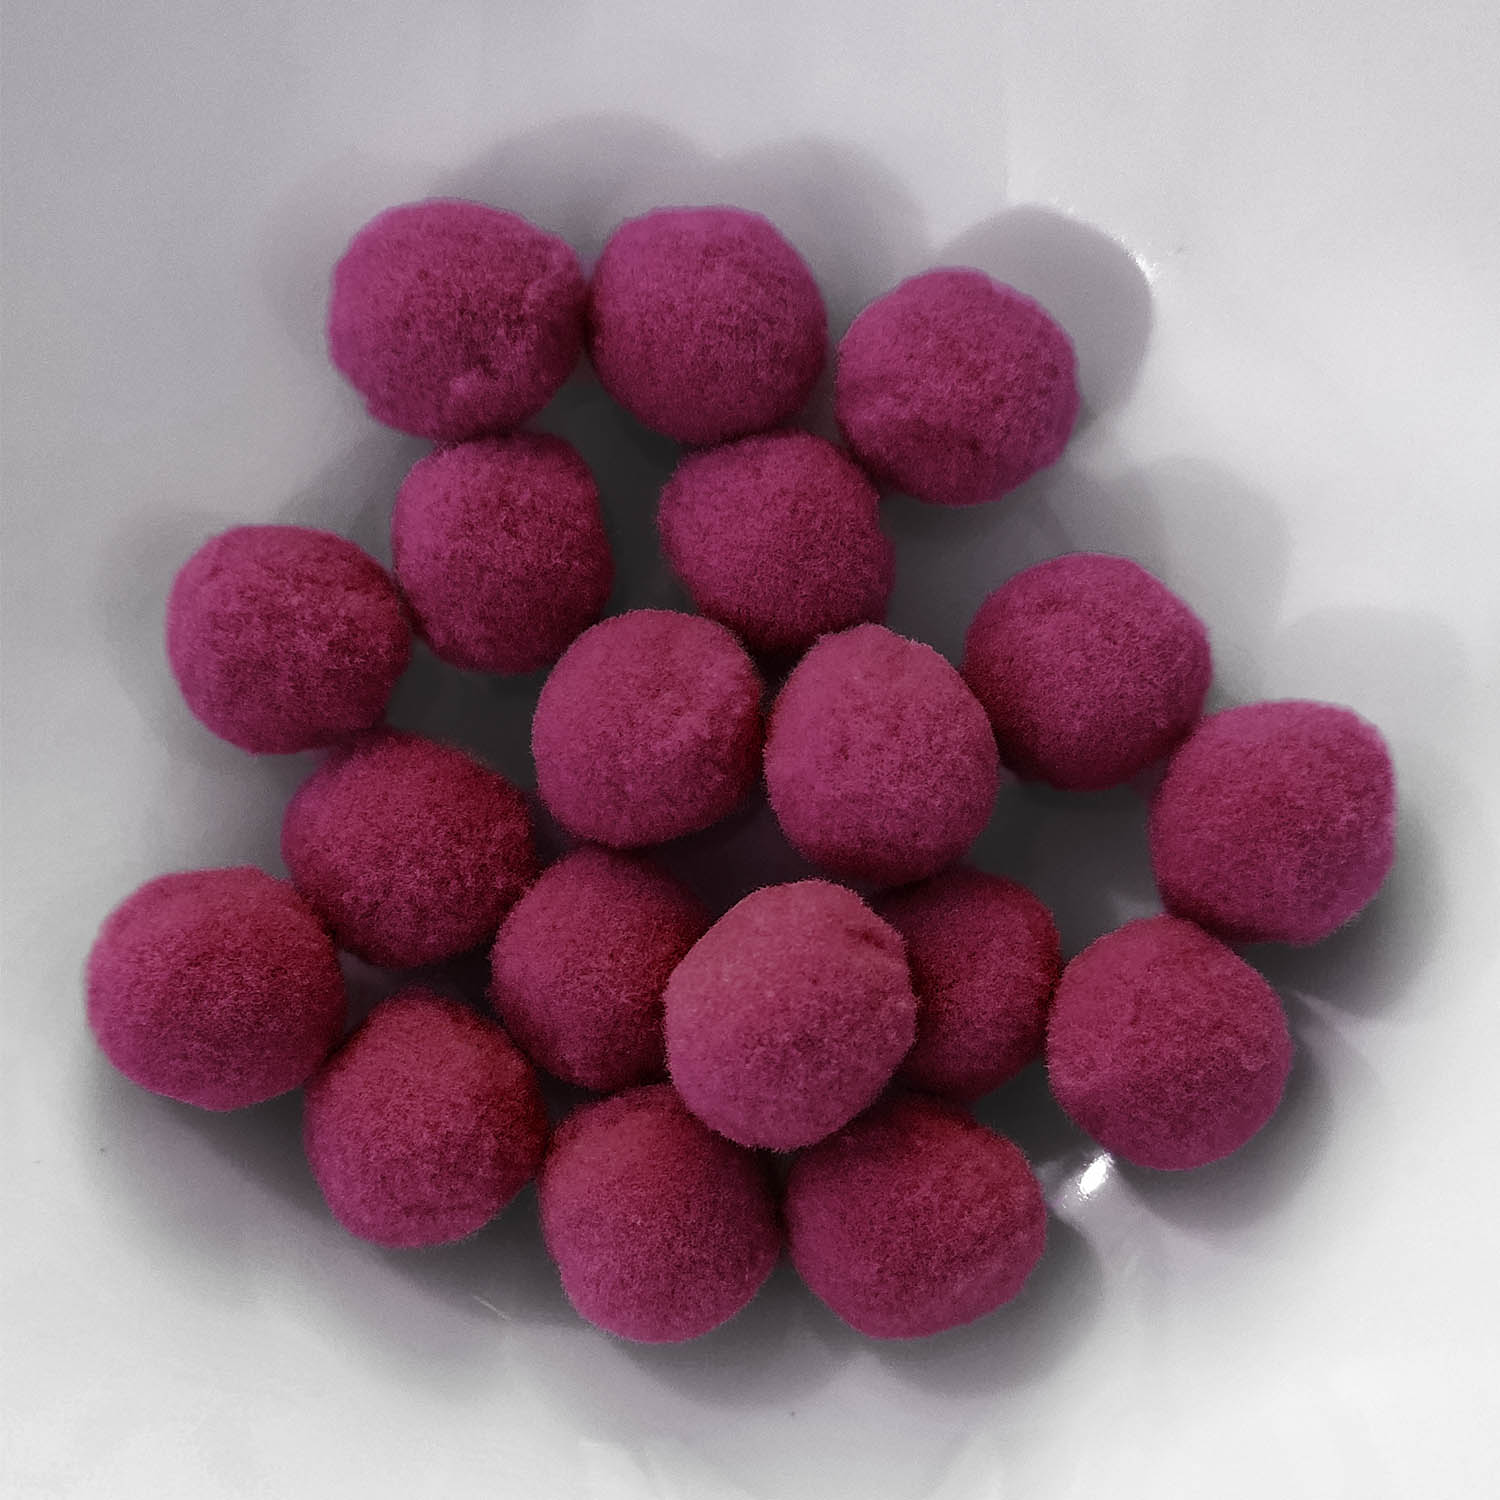 PomPon / Bälle aus Baumwolle - 12 mm / 40er Set - Pink